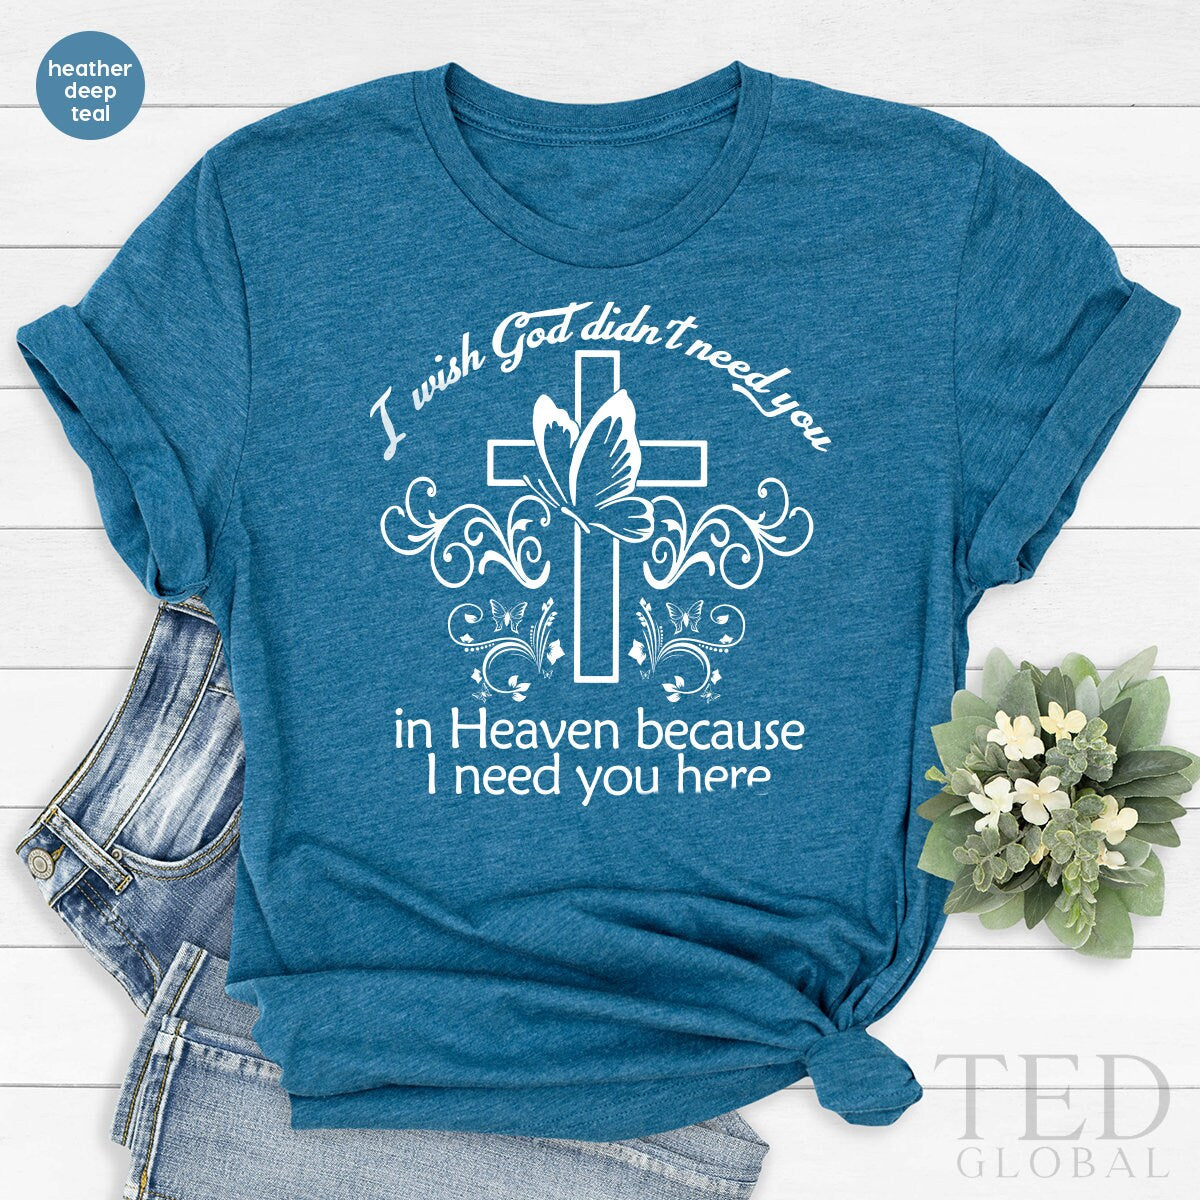 In Loving Memory T-shirt Memorial T-shirt of Loved One Bereavement